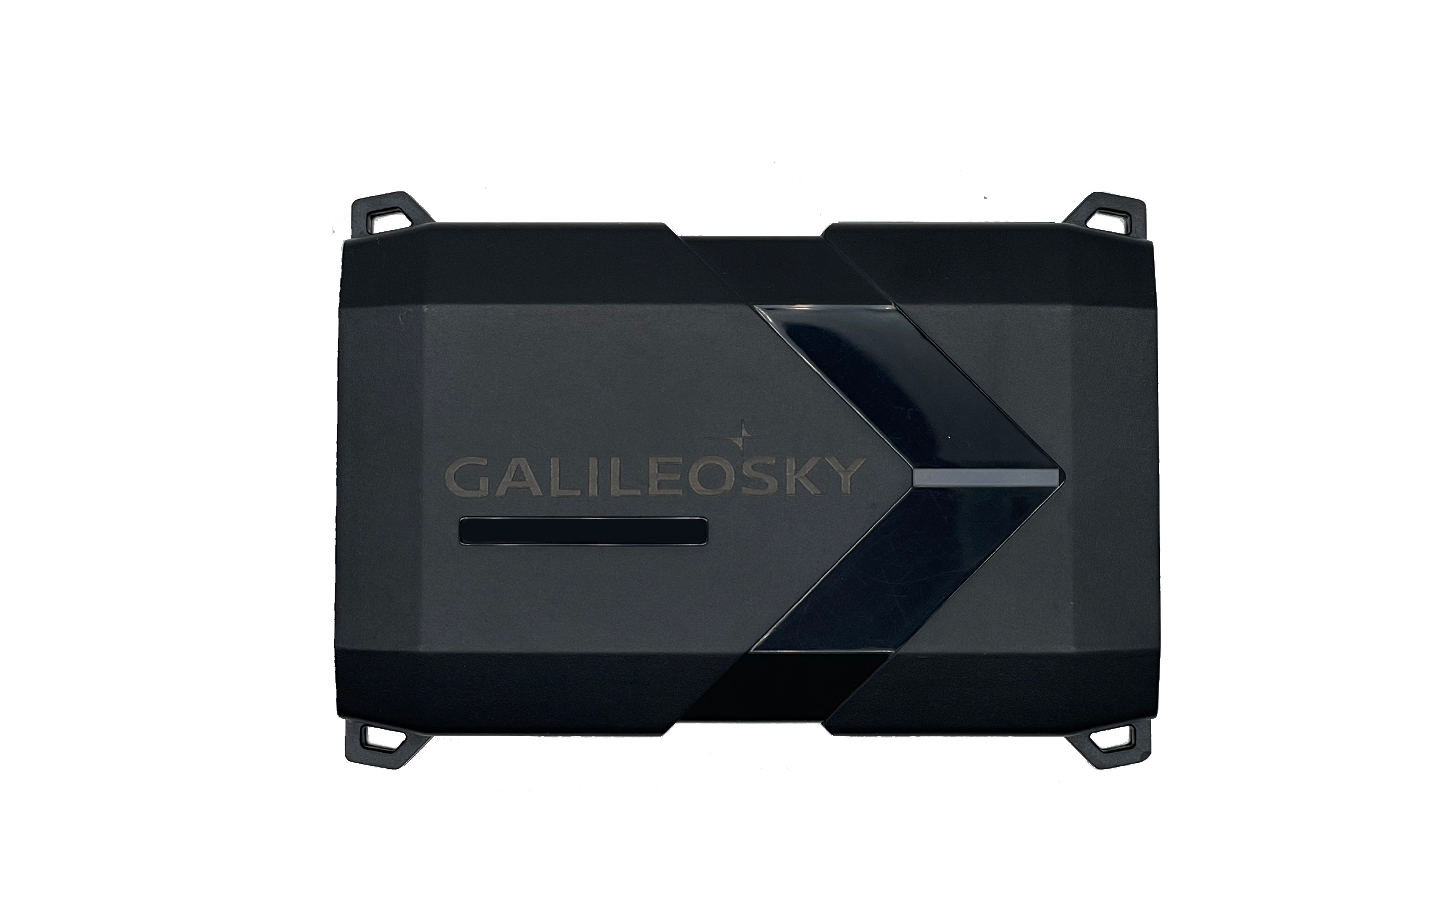 Galileosky 10C Int